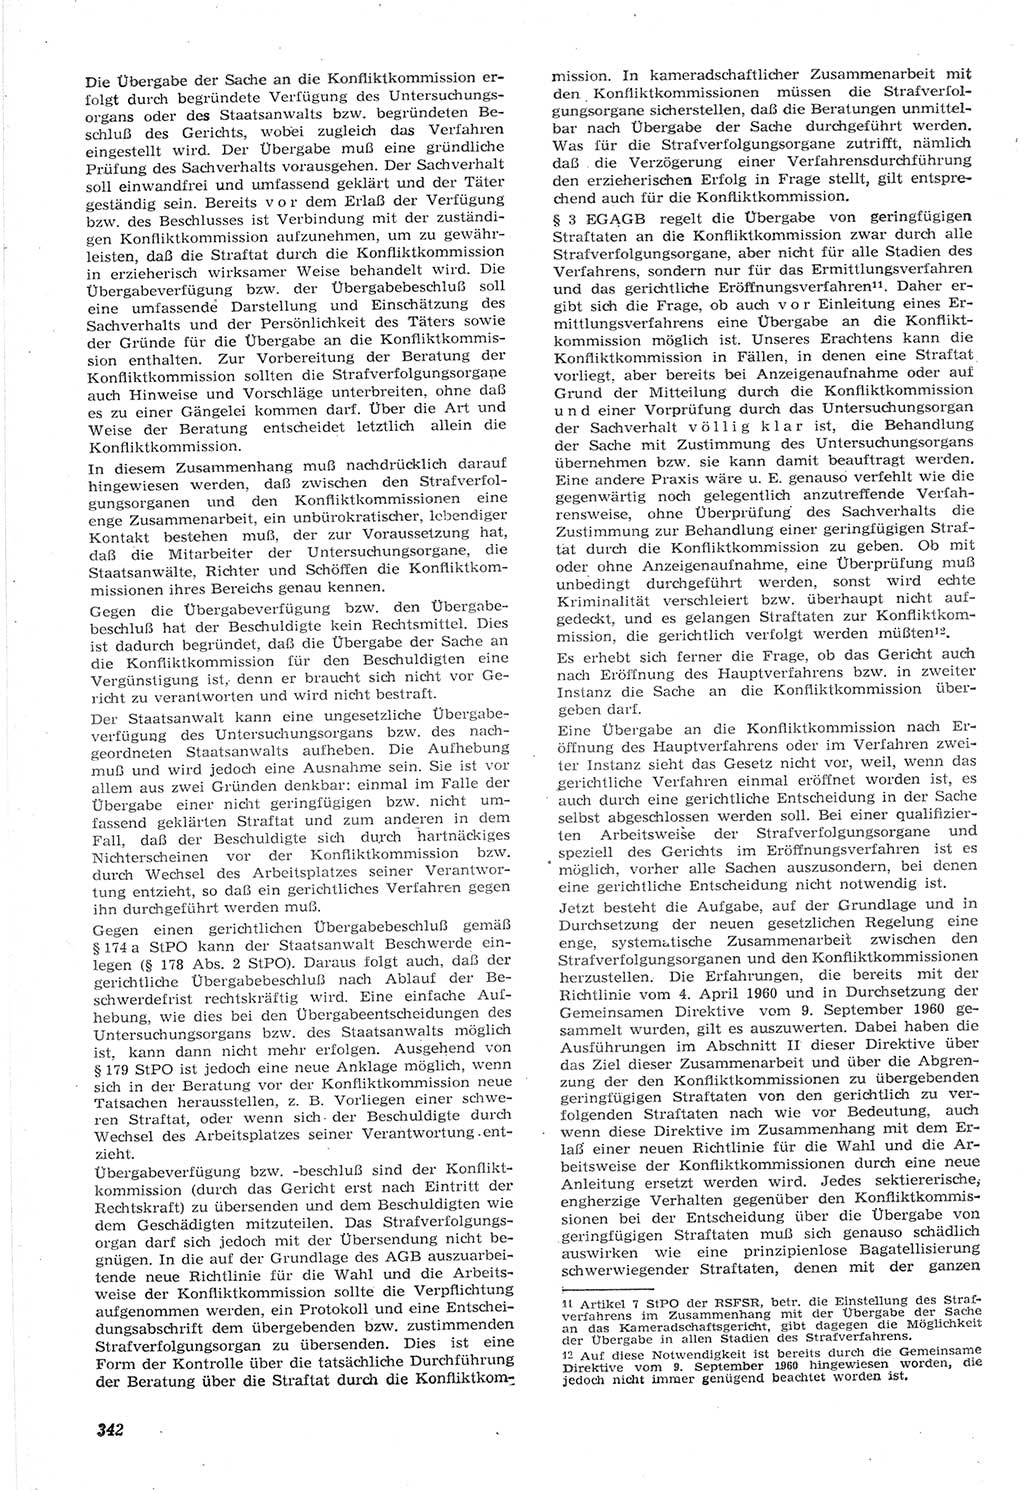 Neue Justiz (NJ), Zeitschrift für Recht und Rechtswissenschaft [Deutsche Demokratische Republik (DDR)], 15. Jahrgang 1961, Seite 342 (NJ DDR 1961, S. 342)